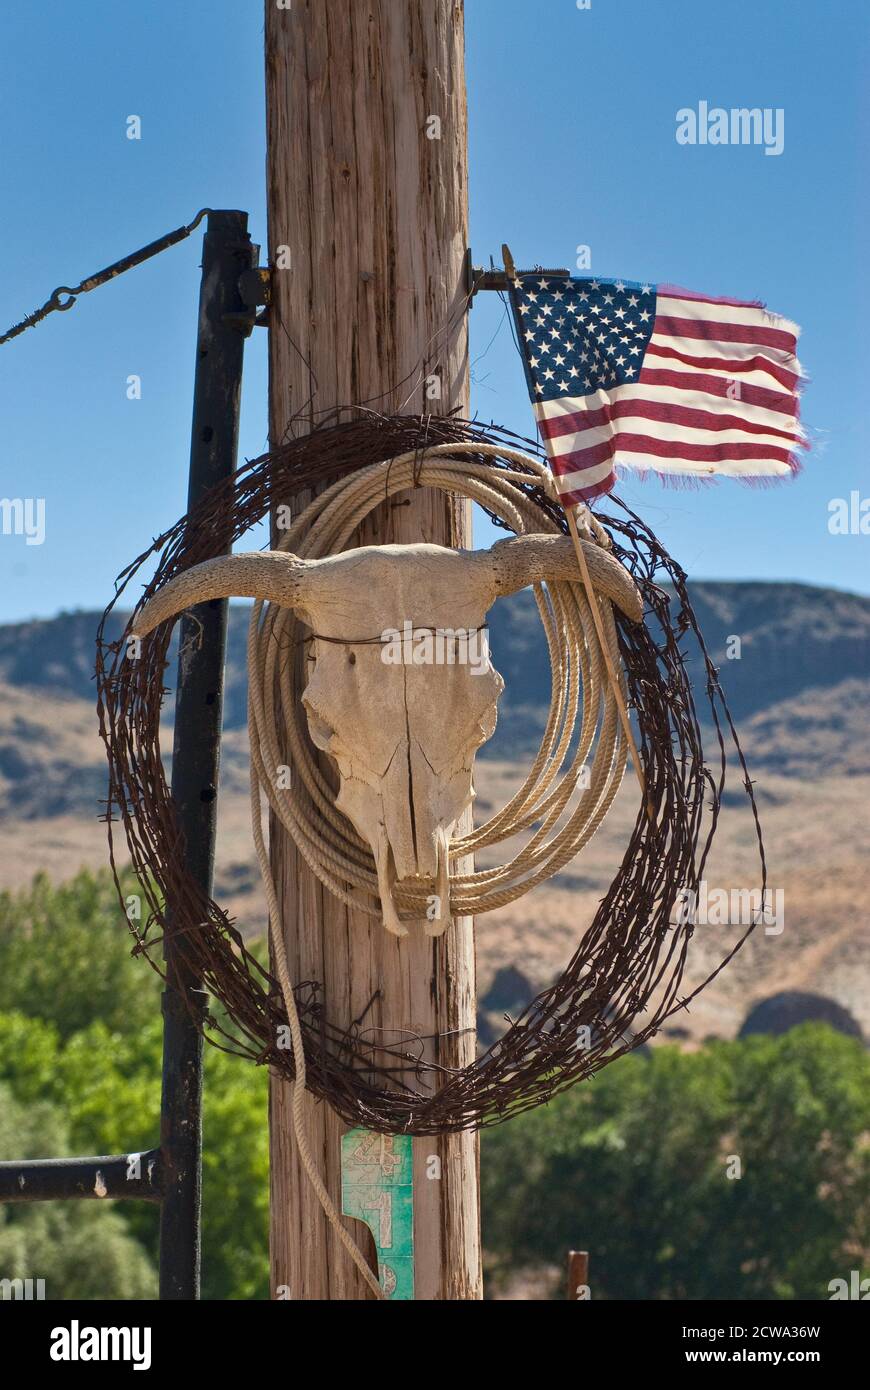 Bobina di filo spinato, lazo, cranio toro e bandiera americana sfilacciata al posto di cancello del ranch in Succor Creek Valley, High Desert Region, Oregon, USA Foto Stock